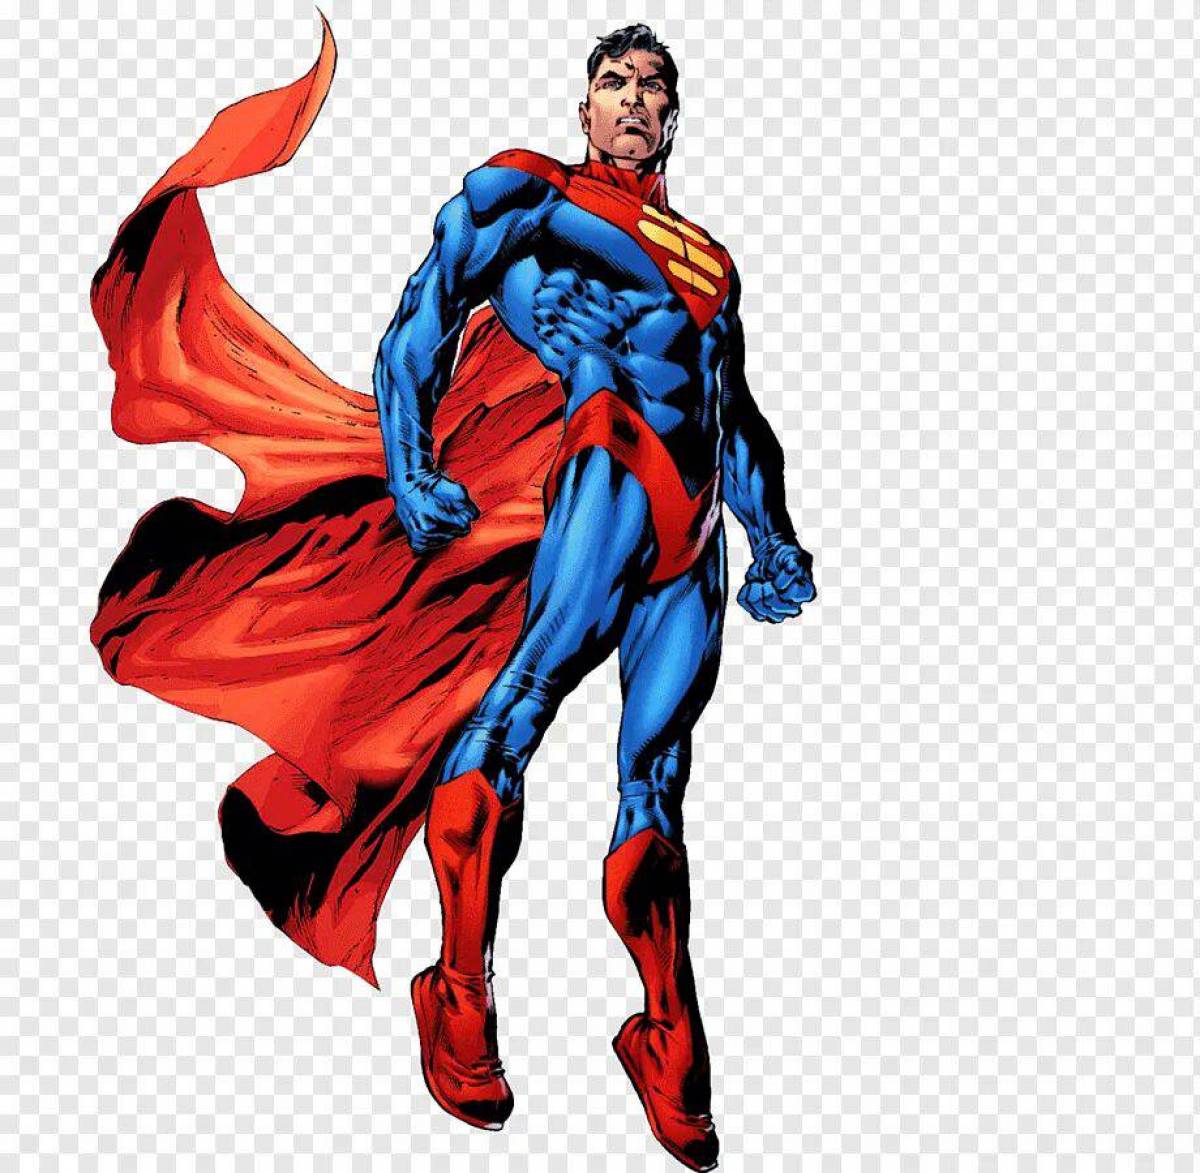 Картинки супер героя. Кэл Кент, Супермен 853 века. Супермен Марвел. Супергерои Марвел Супермен. Супермен Марвел на белом фоне.